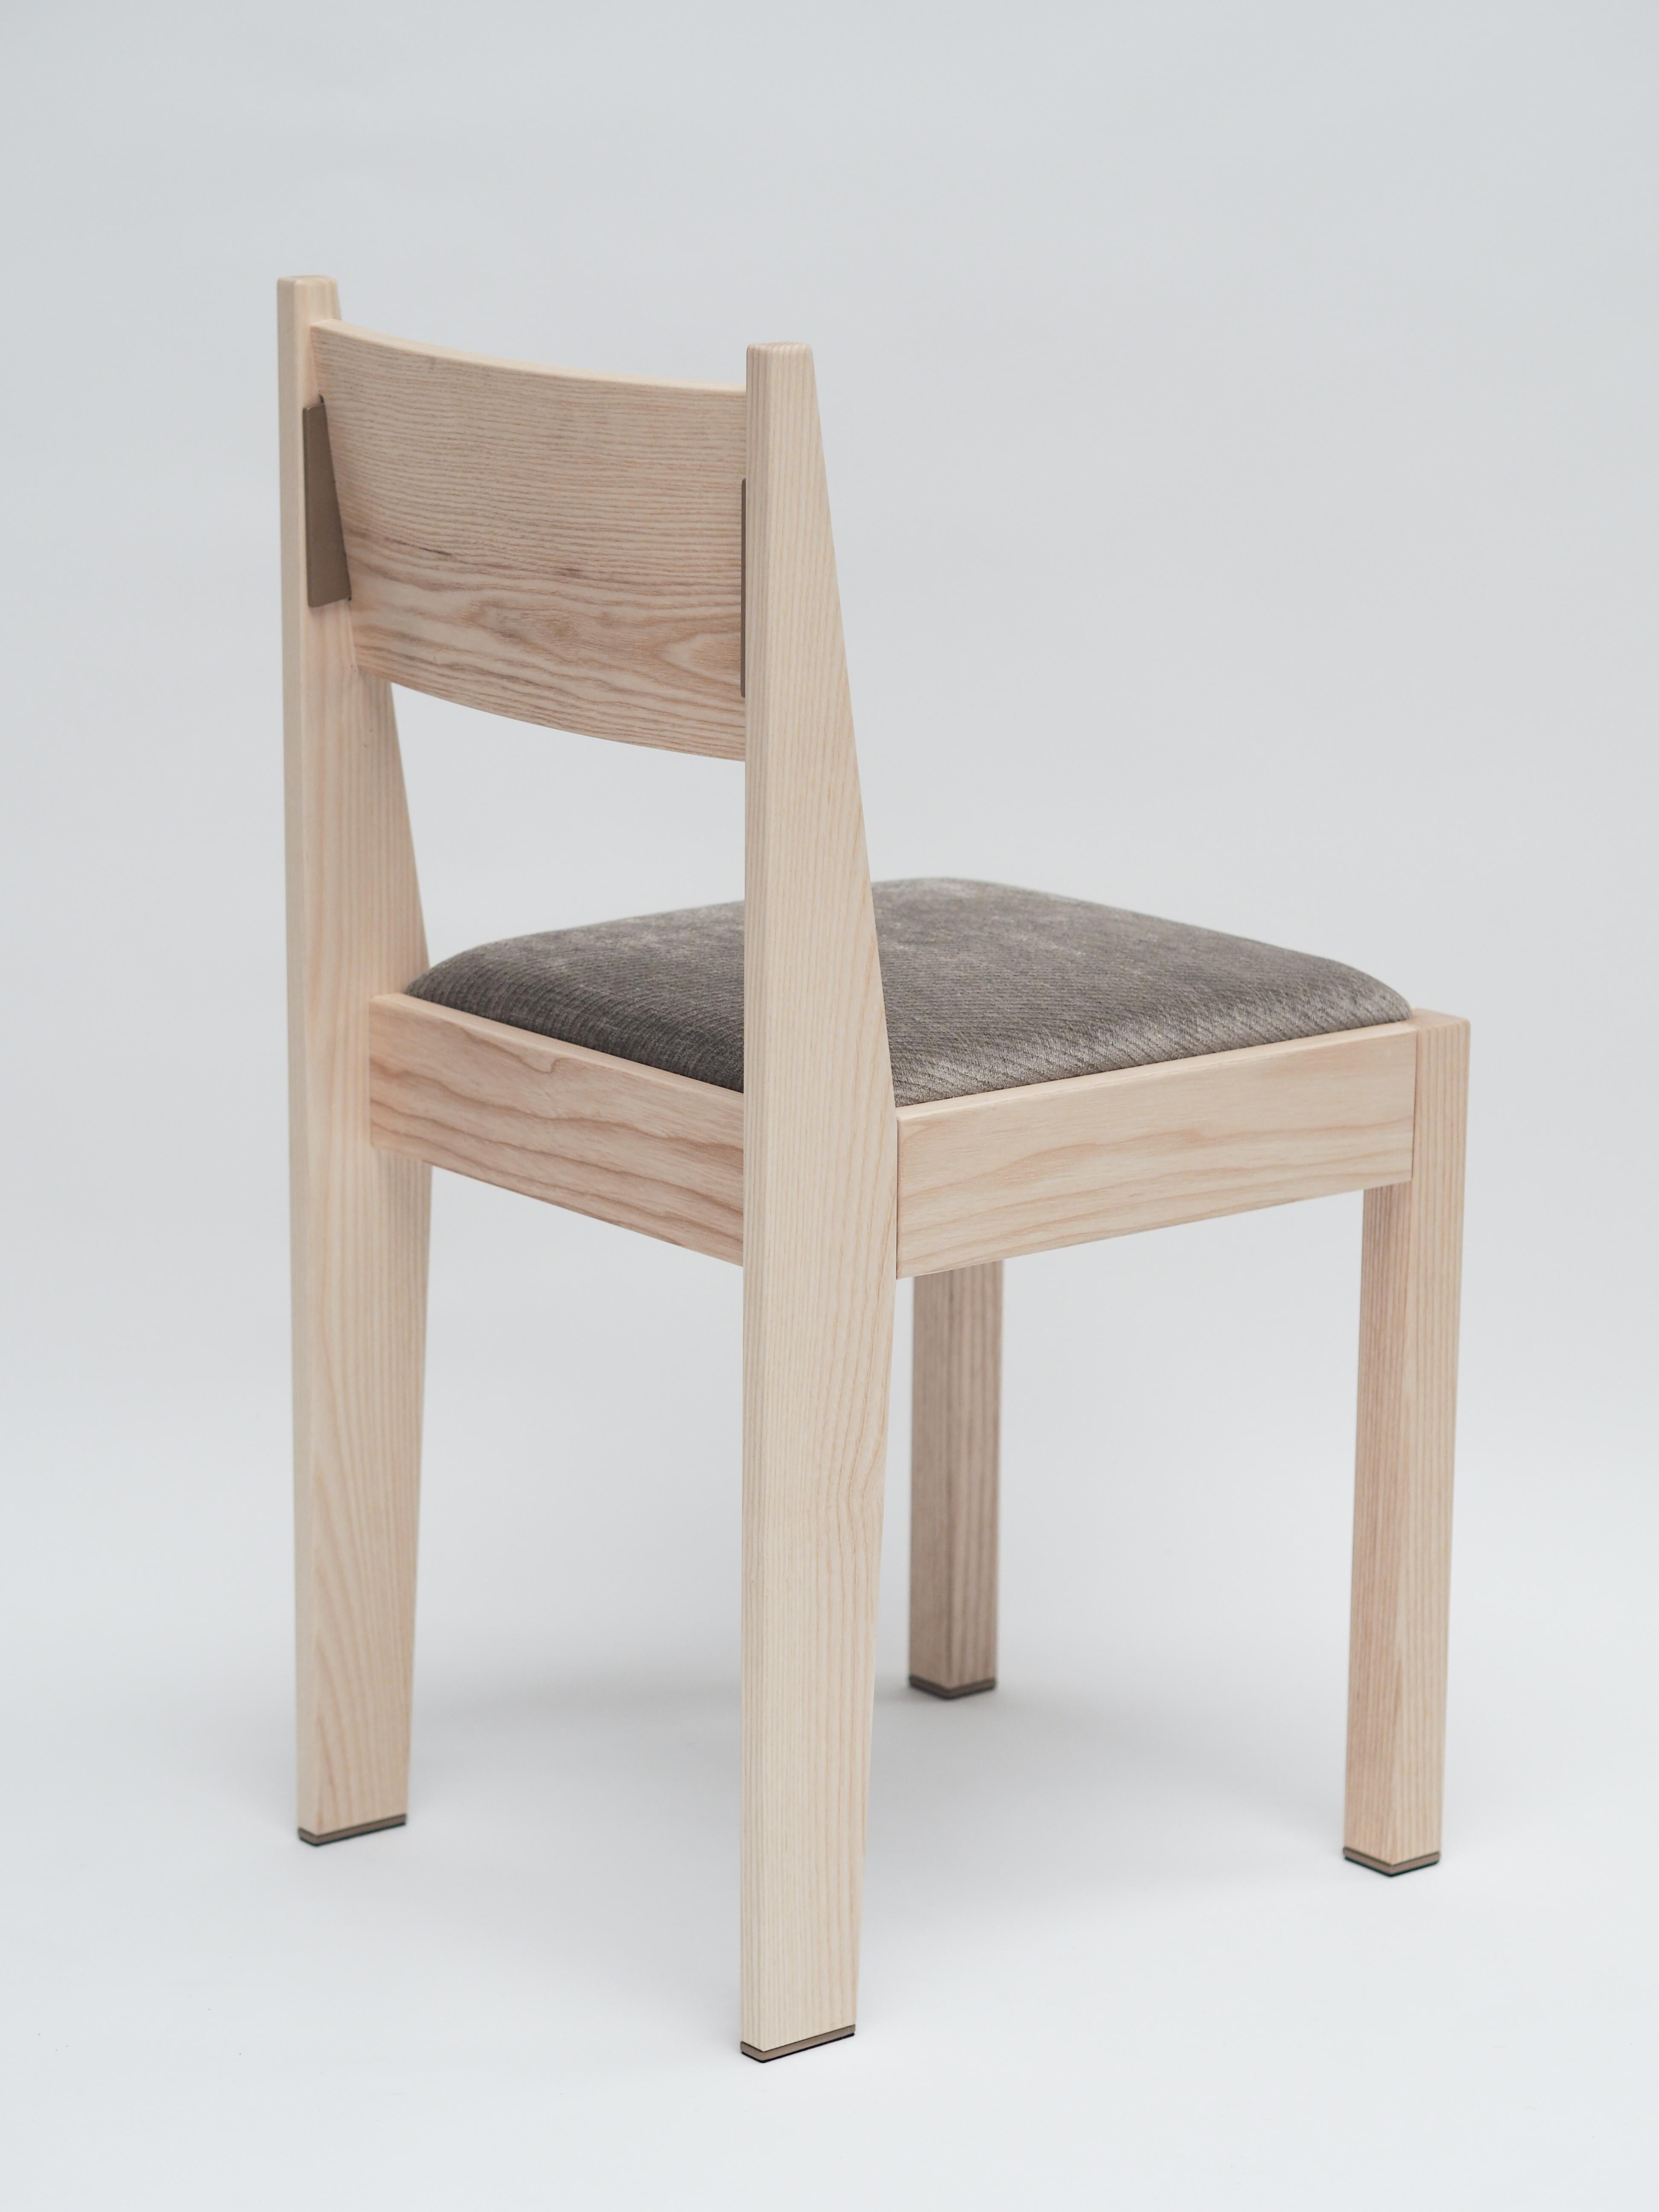 Unser barh chair 01 ist ein klassisches, modernes Design mit feinsten Details. Der von der Art-Déco-Bewegung inspirierte Stuhl sieht vertraut aus und ist daher zeitlos und passt zu fast jeder Einrichtung. Um das Gesamtbild von Barh zu